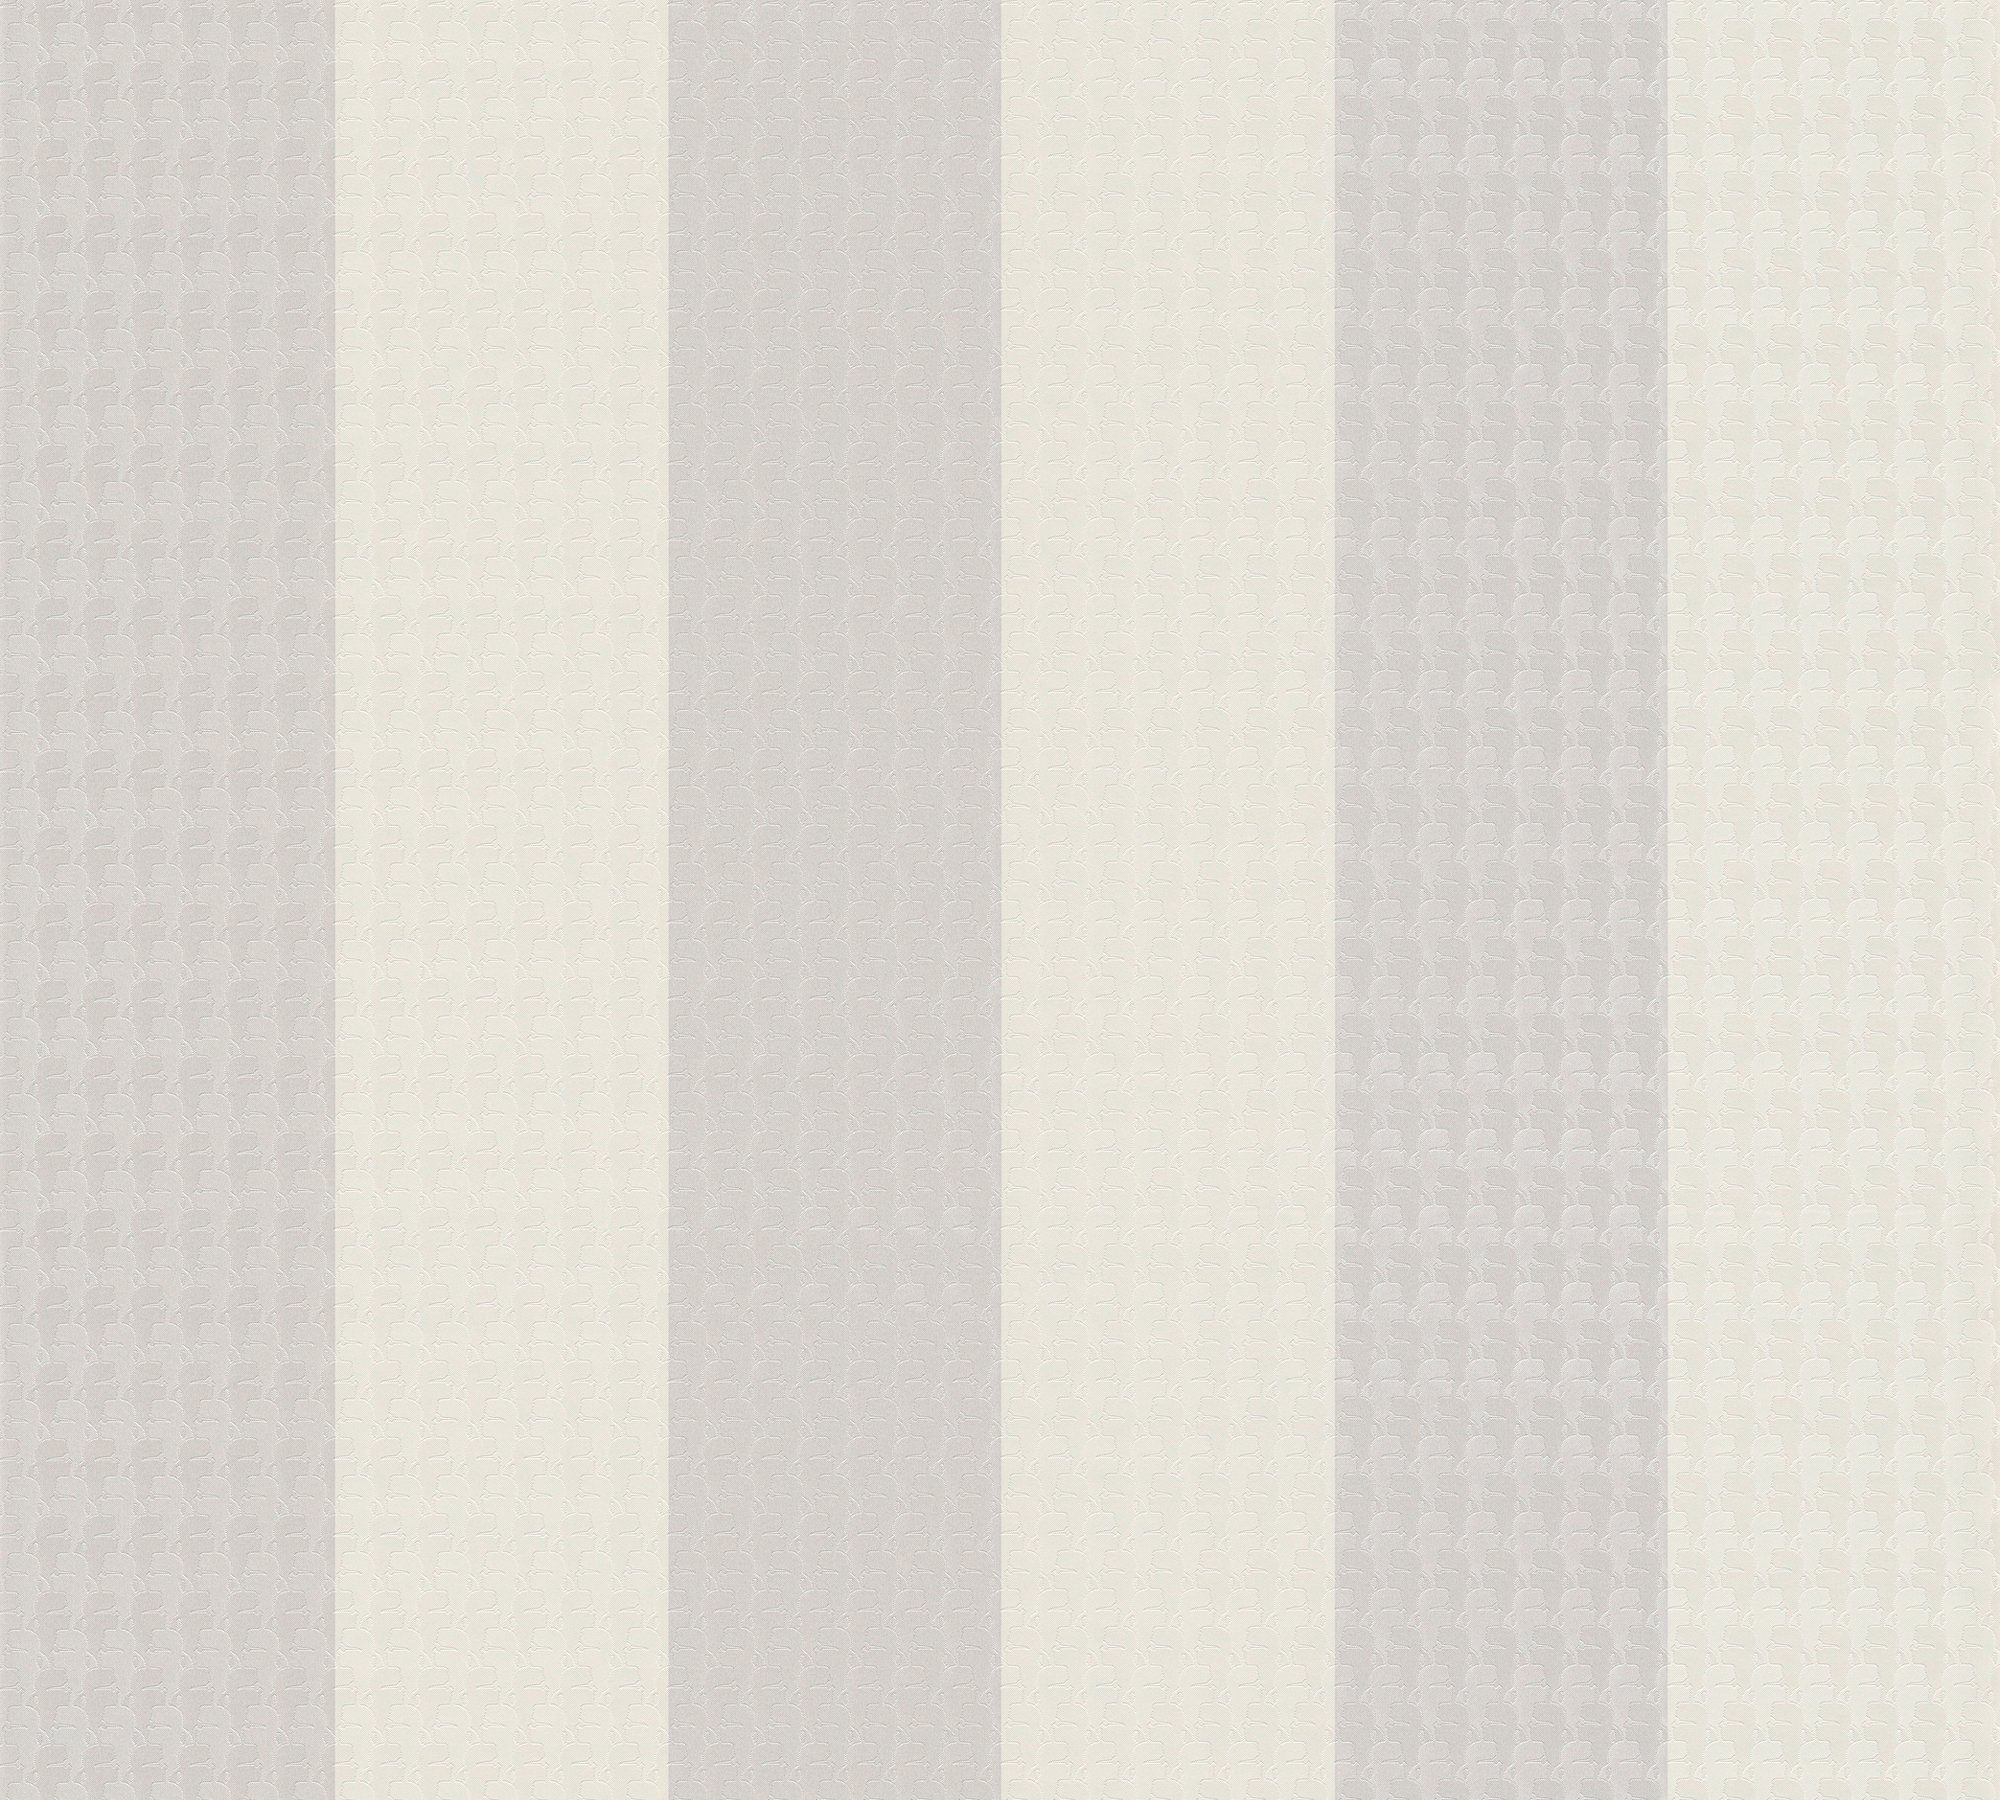 Schlussverkauf A.S. Création Architects Lagerfeld grau/weiß/beige Tapete Vliestapete Paper Stripes, gestreift, Designer Streifen, Streifentapete Karl